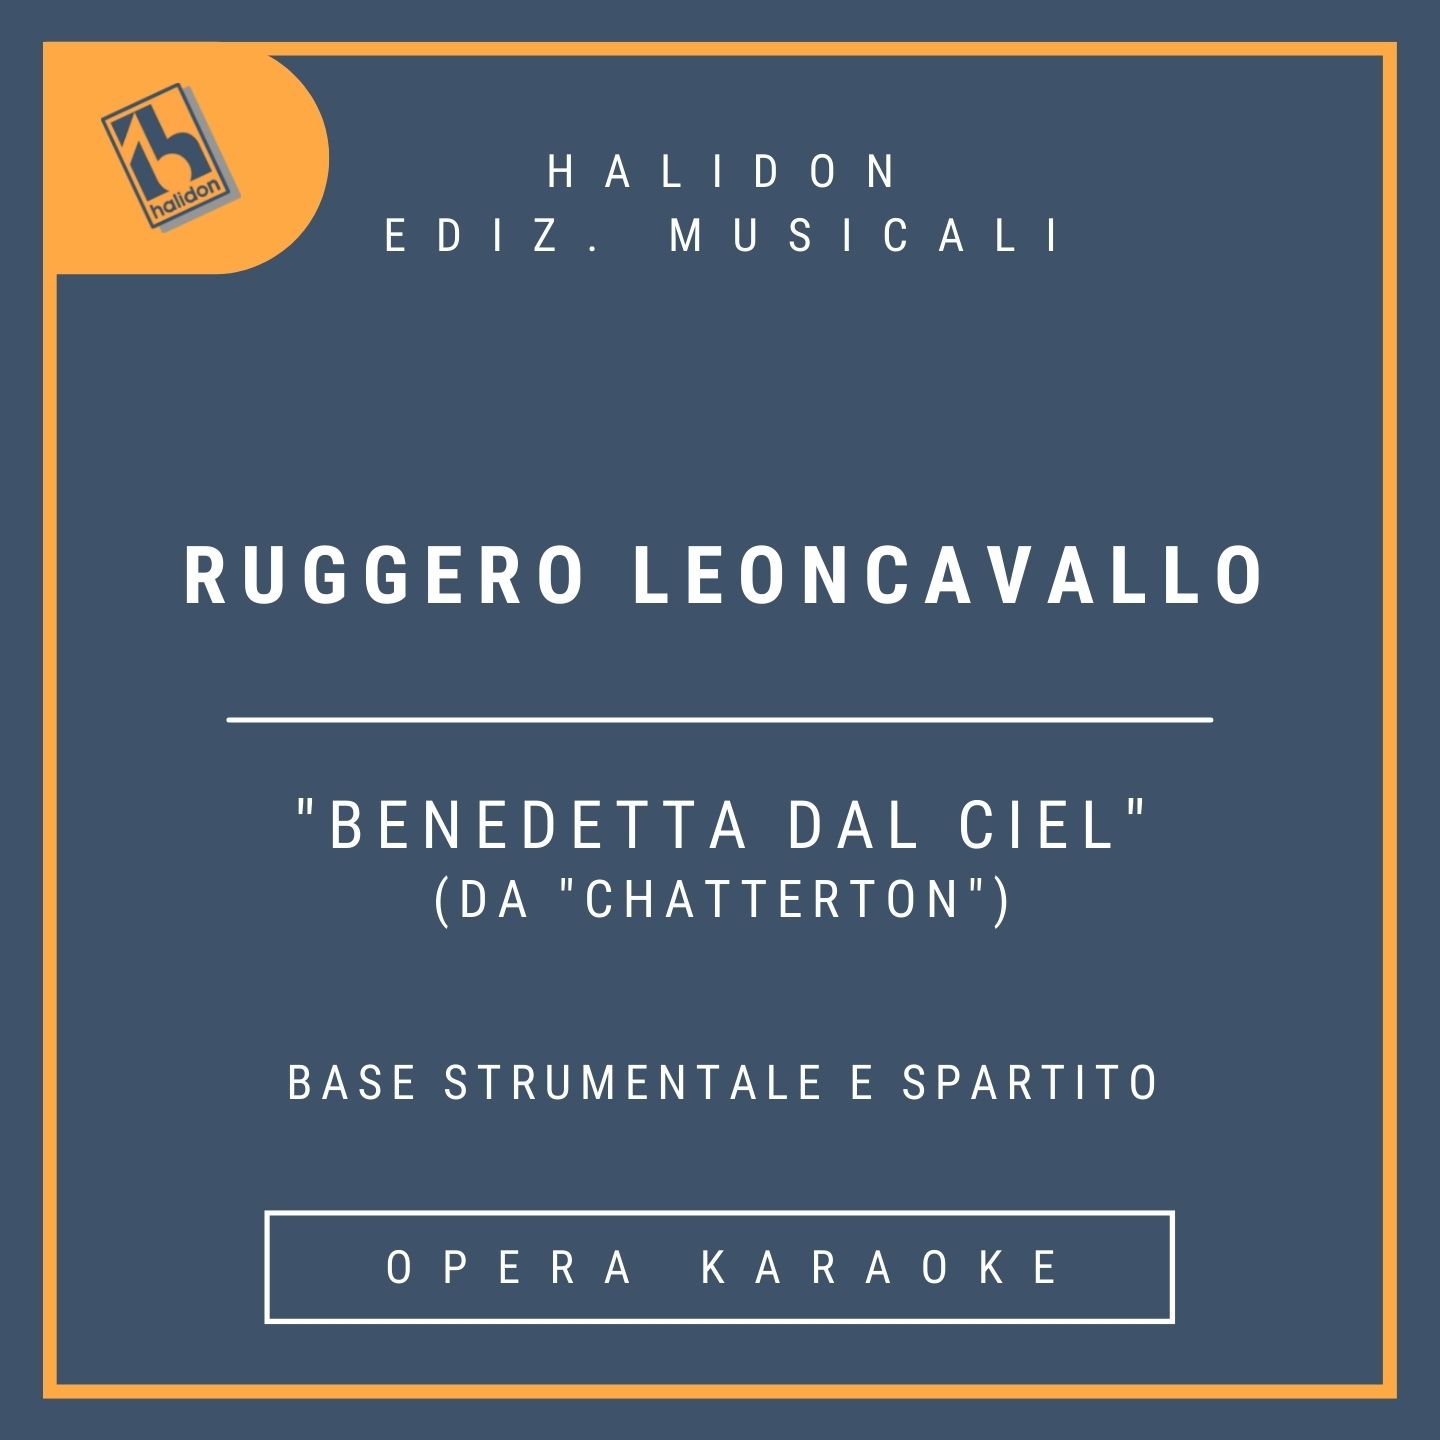 Ruggero Leoncavallo - Benedetta dal ciel (from 'Chatterton') - Jenny's Cantabile (dramatic soprano) - Instrumental track + sheet